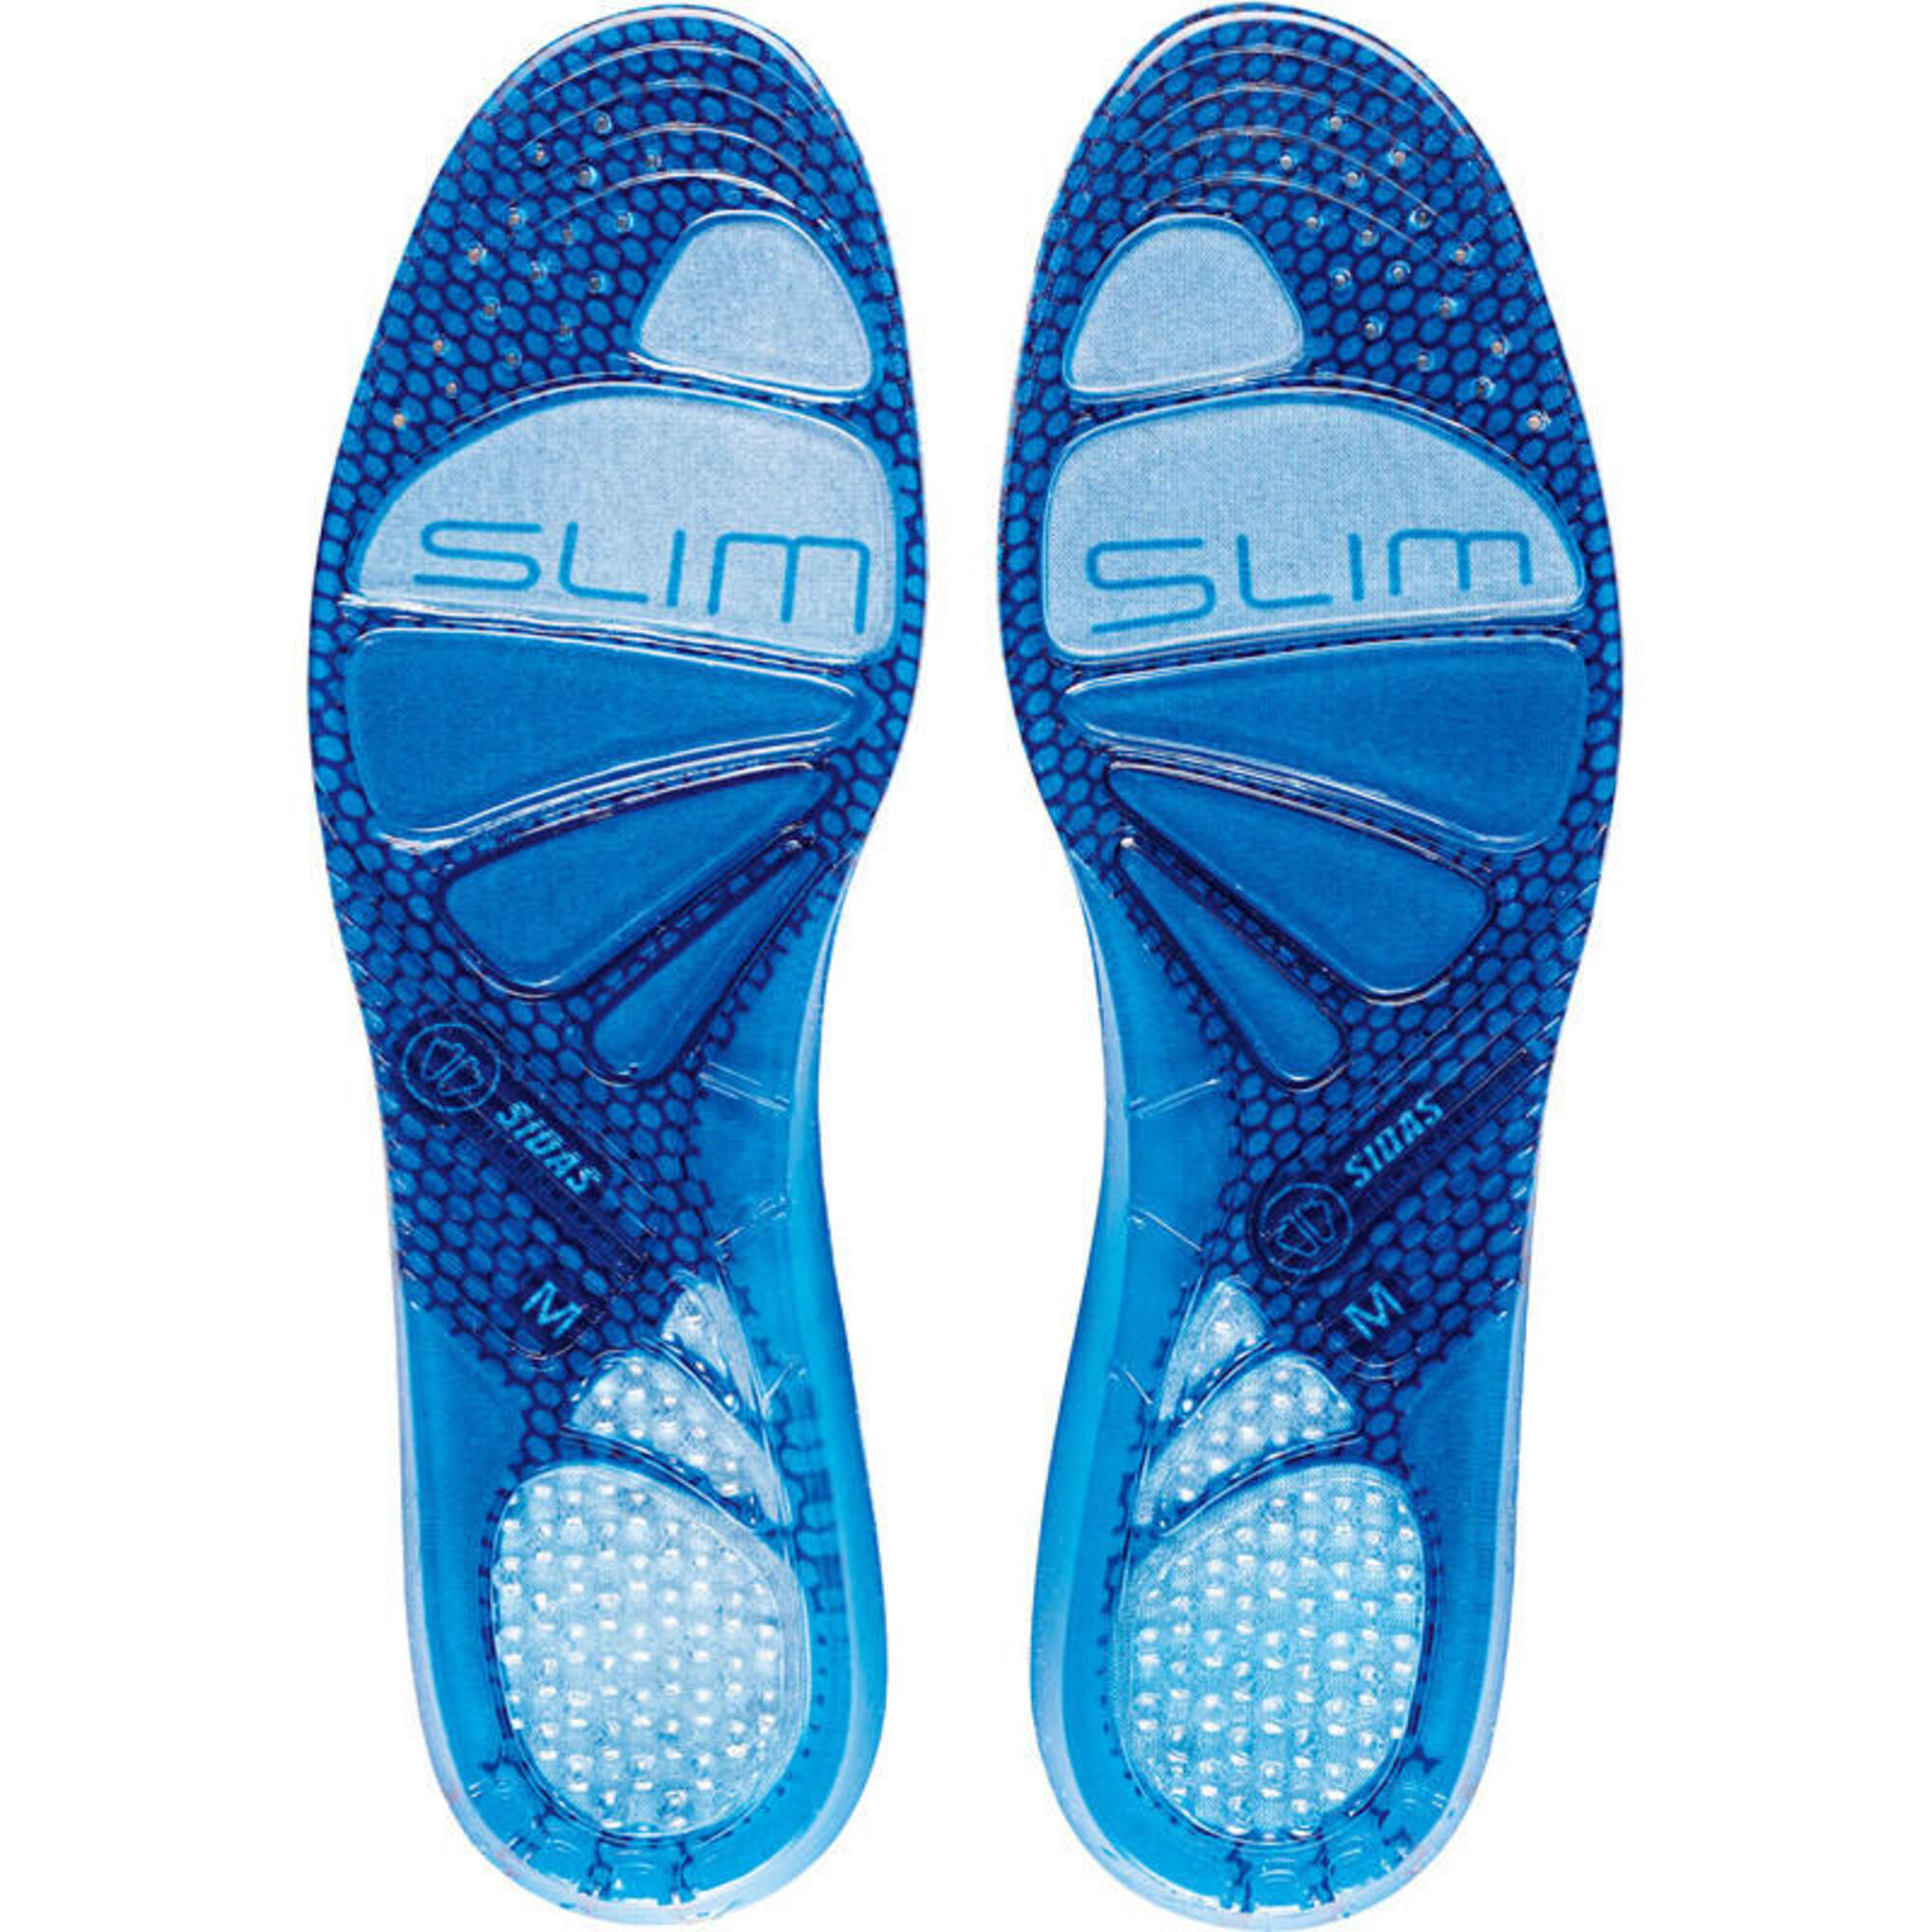 Plantillas de gel amortiguadoras para volúmenes de calzado reducidos - Gel Slim